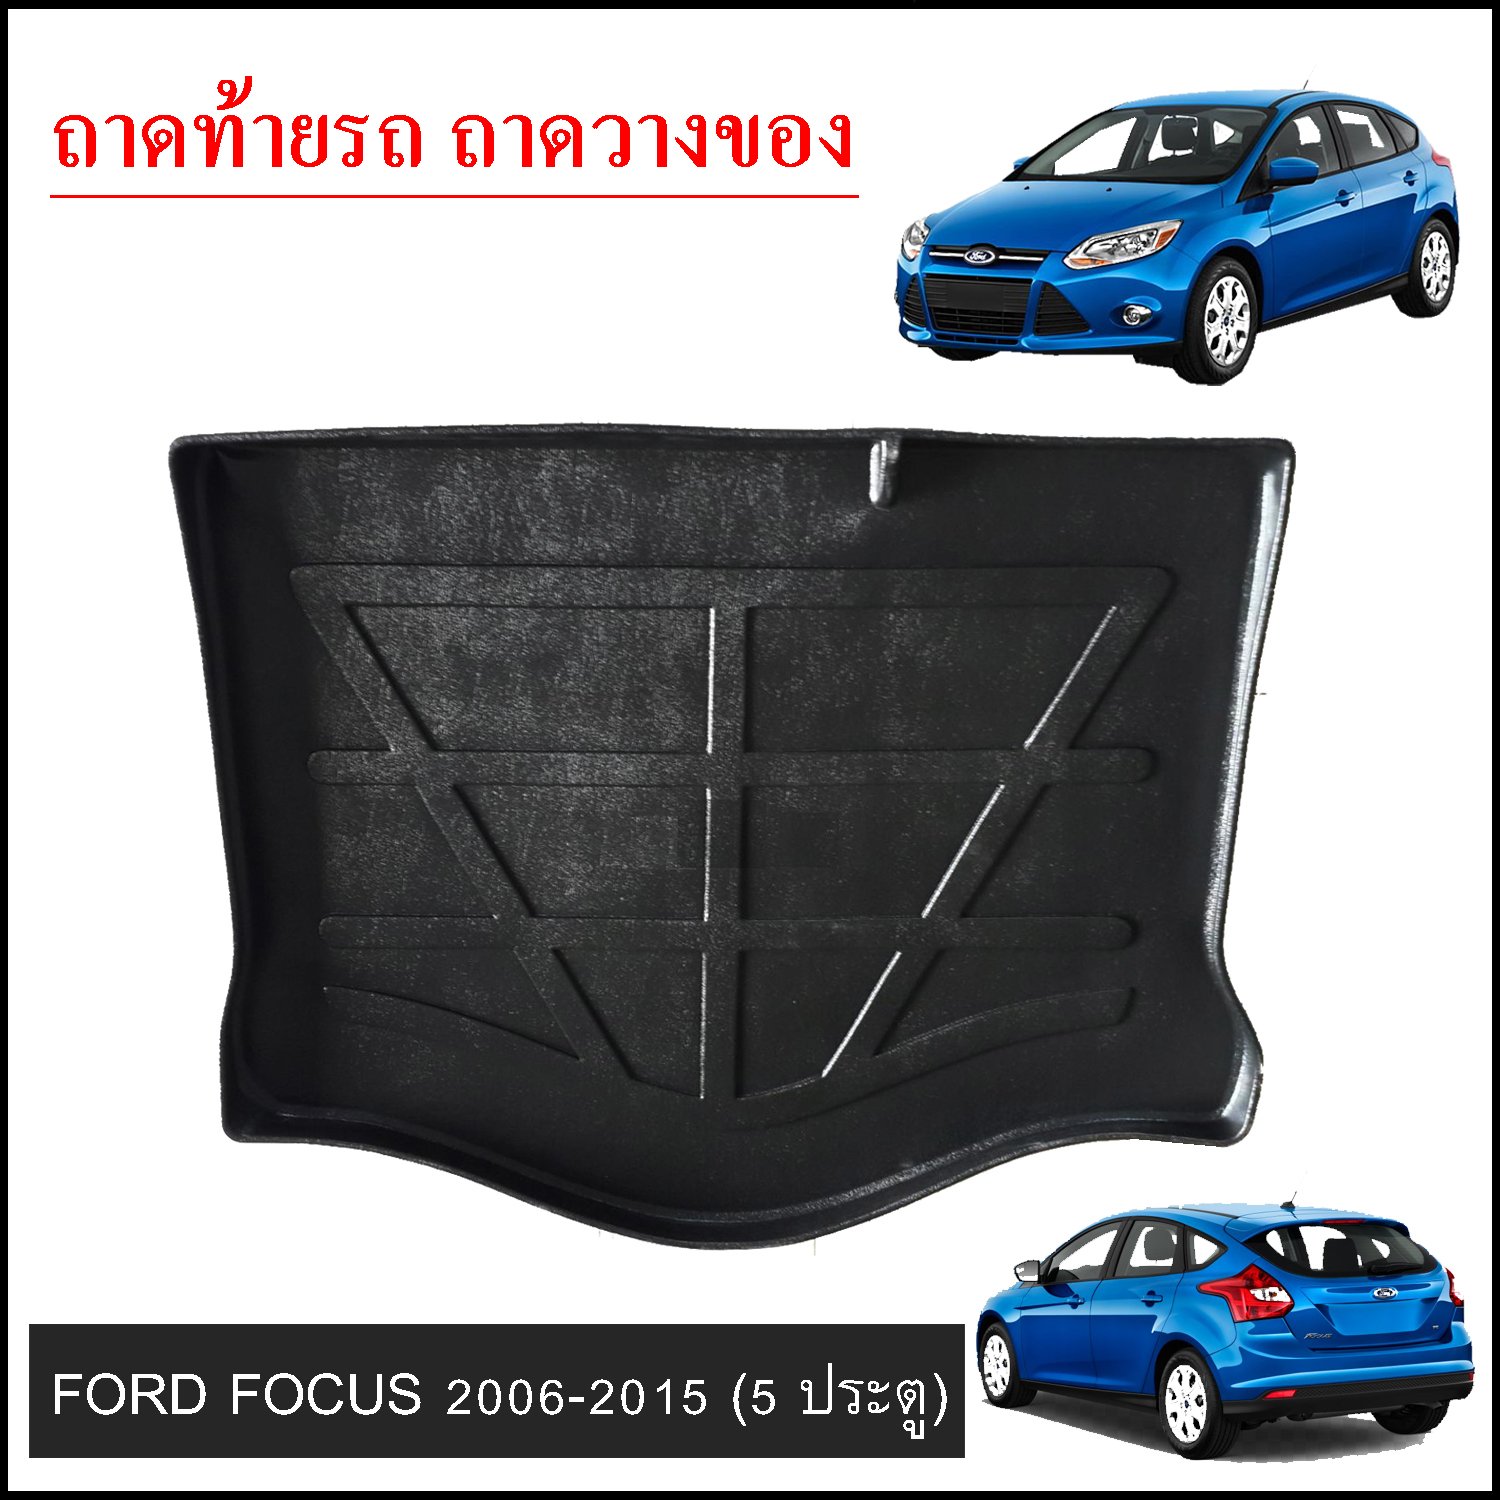 Accesorios Ford Focus 2016